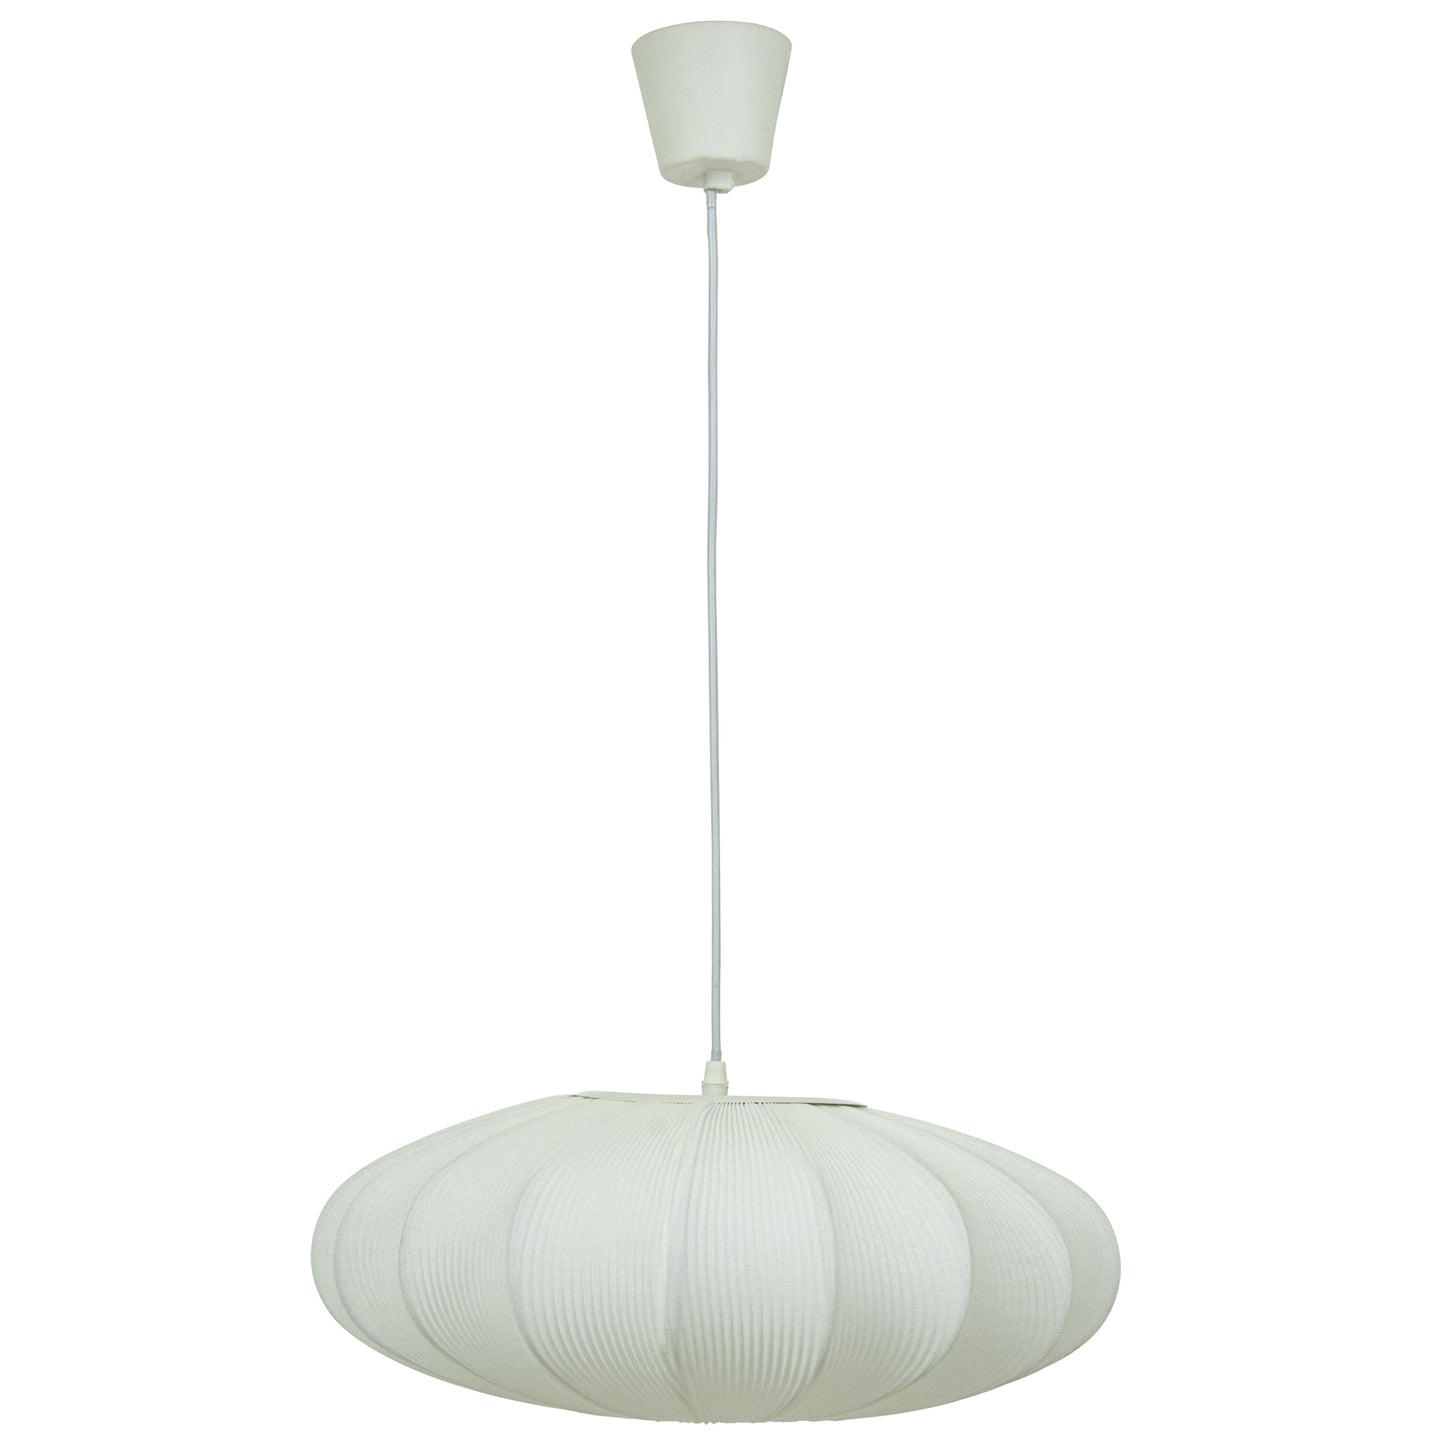 Mamsell taklampe pendel rund med diameter 45cm trukket i hvit tekstil rundt en ramme i hvit metall - Aneta belysning